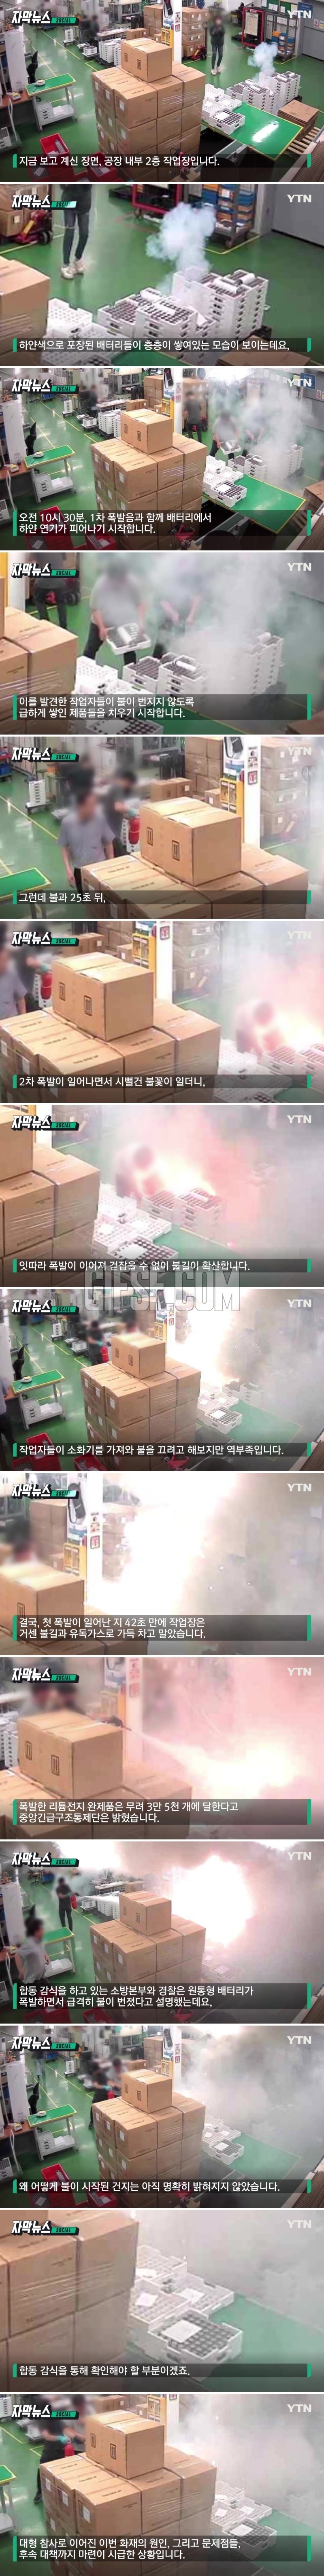 ',리튬 참사', 화재 당시.시간대별 CCTV 화면.jpg